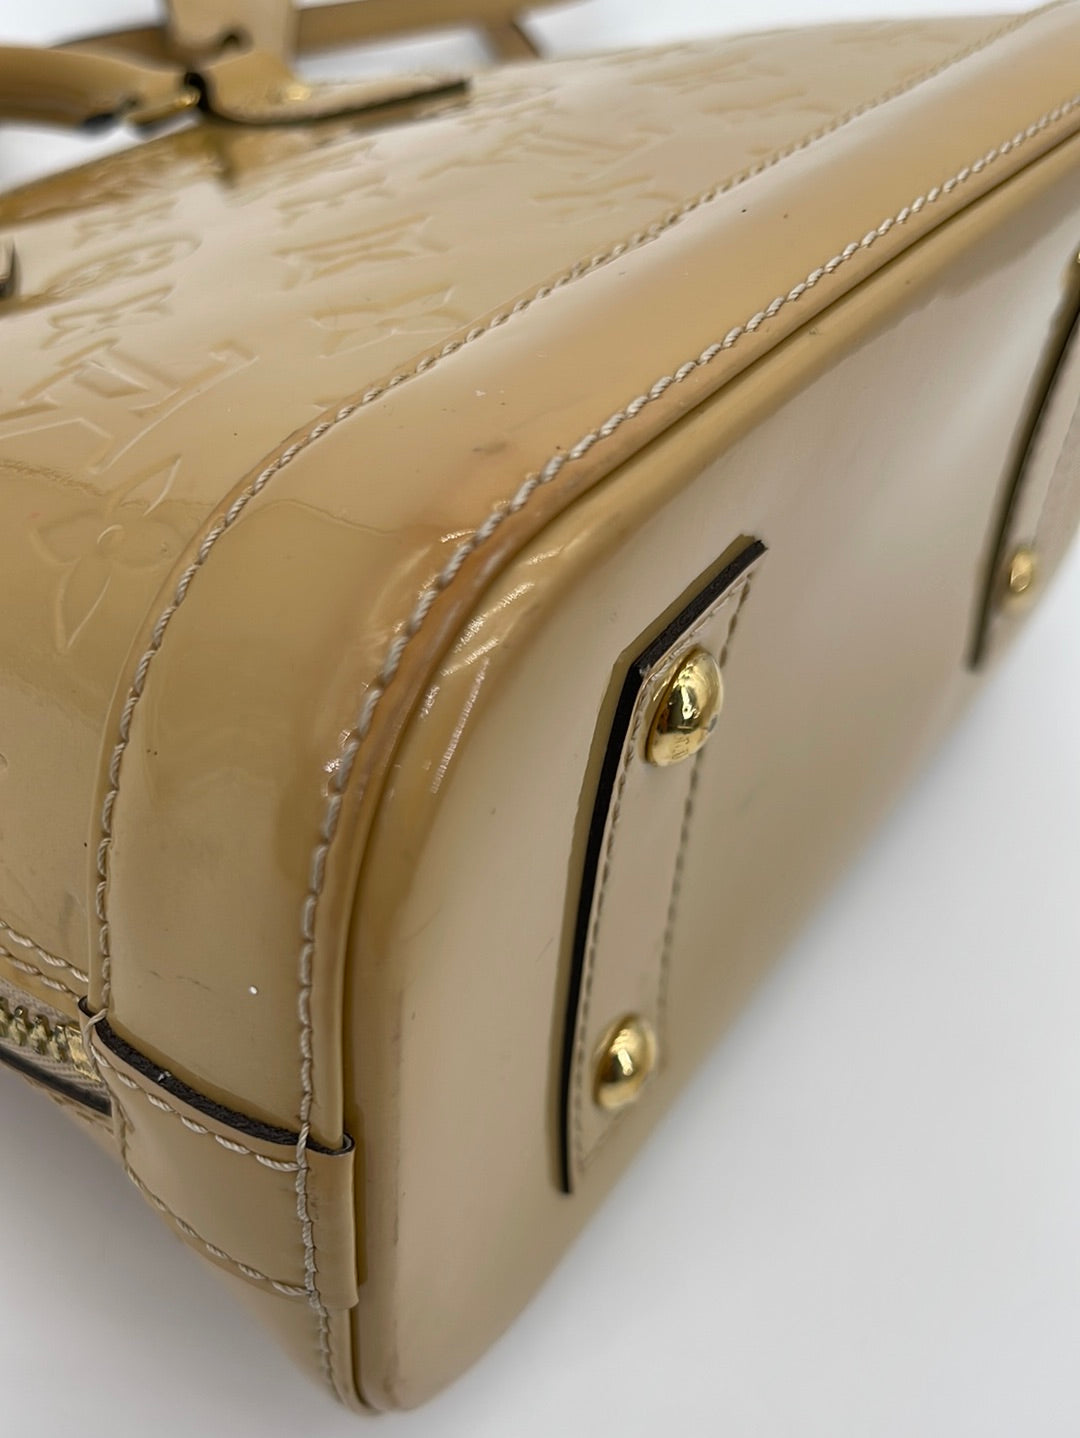 Louis Vuitton Alma Handbag 354413